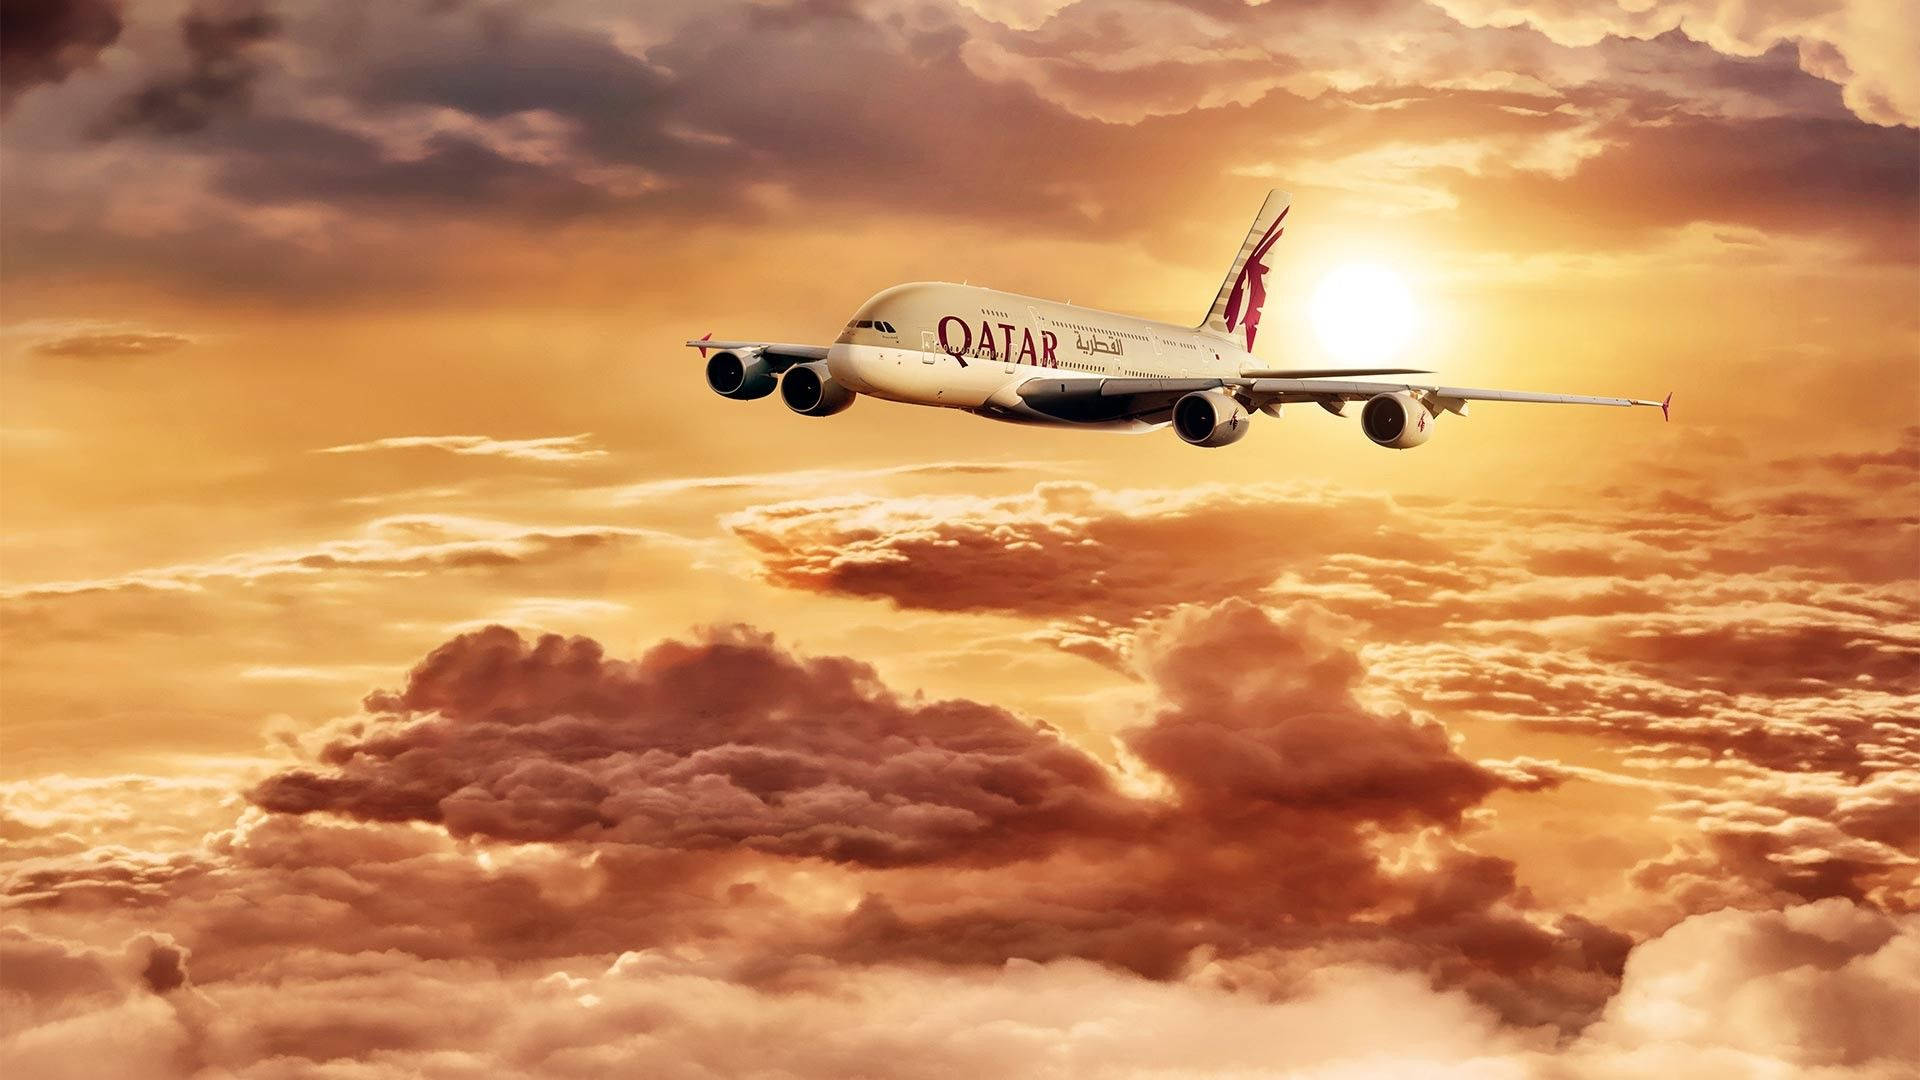 Qatar Airways Flying Through The Sunset Background